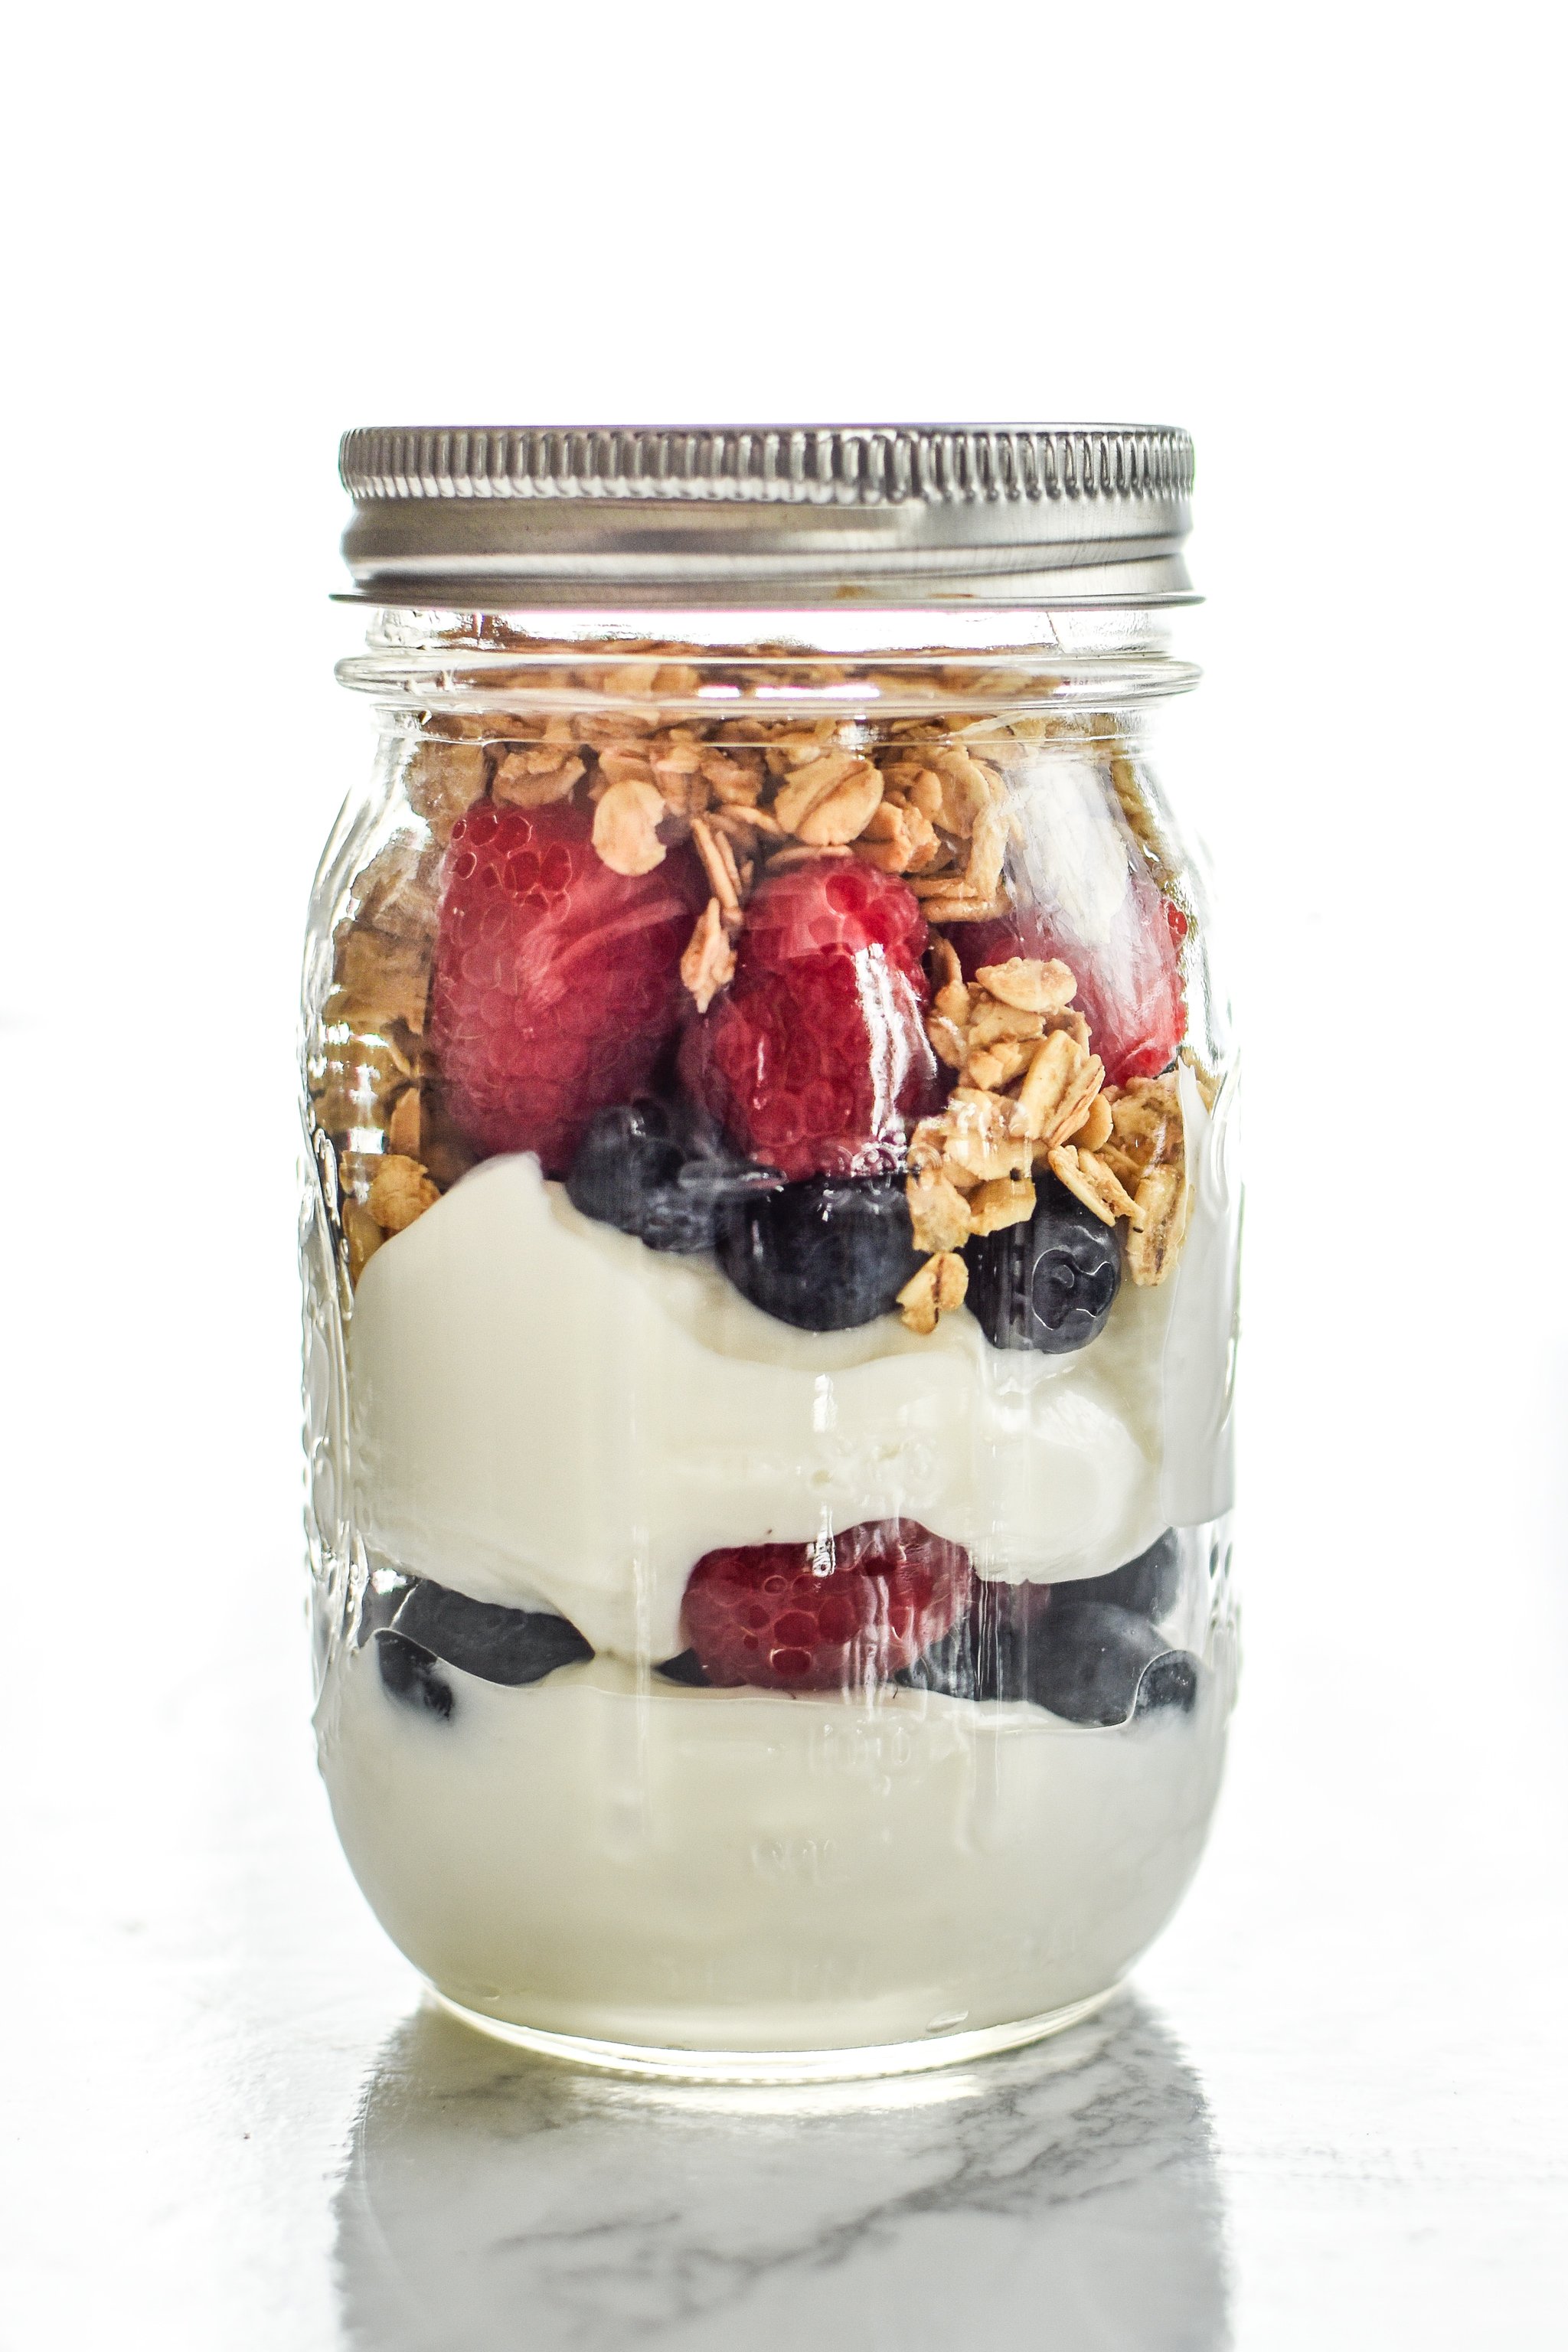 5 Make-Ahead Fruit & Greek Yogurt Parfait Ideas to Try for Breakfast